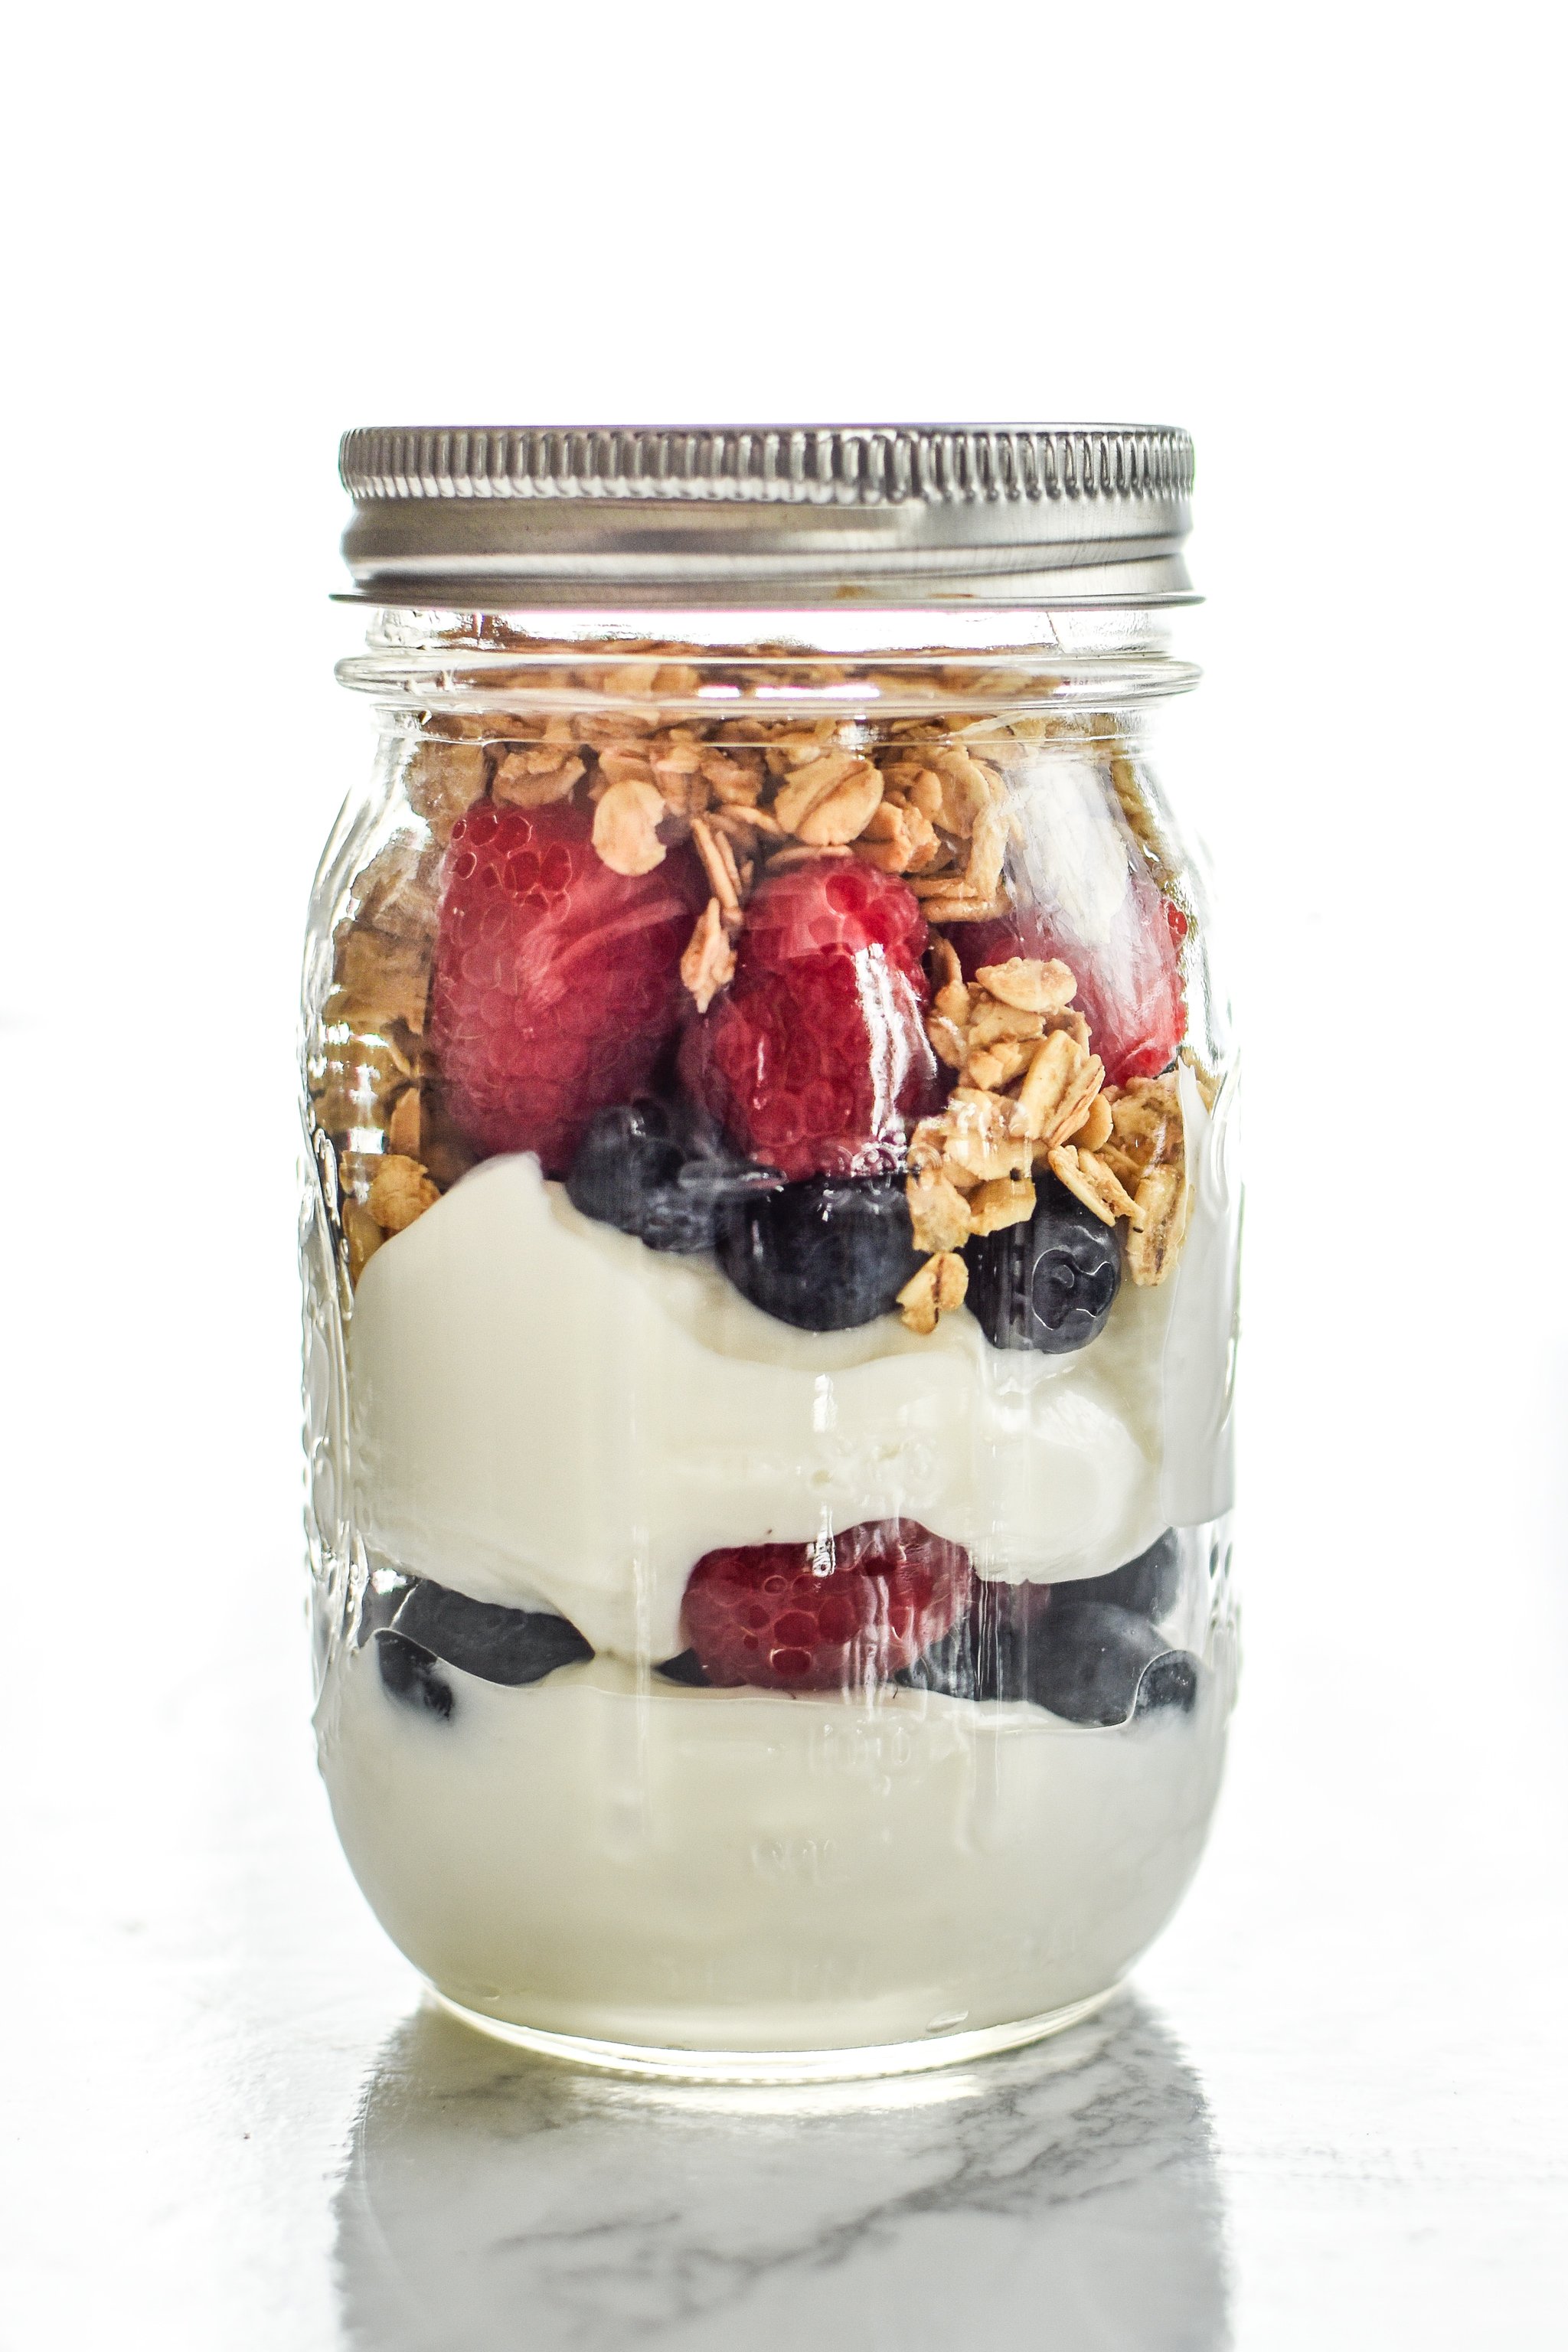 5 Make-Ahead Fruit & Greek Yogurt Parfait Ideas to Try for Breakfast